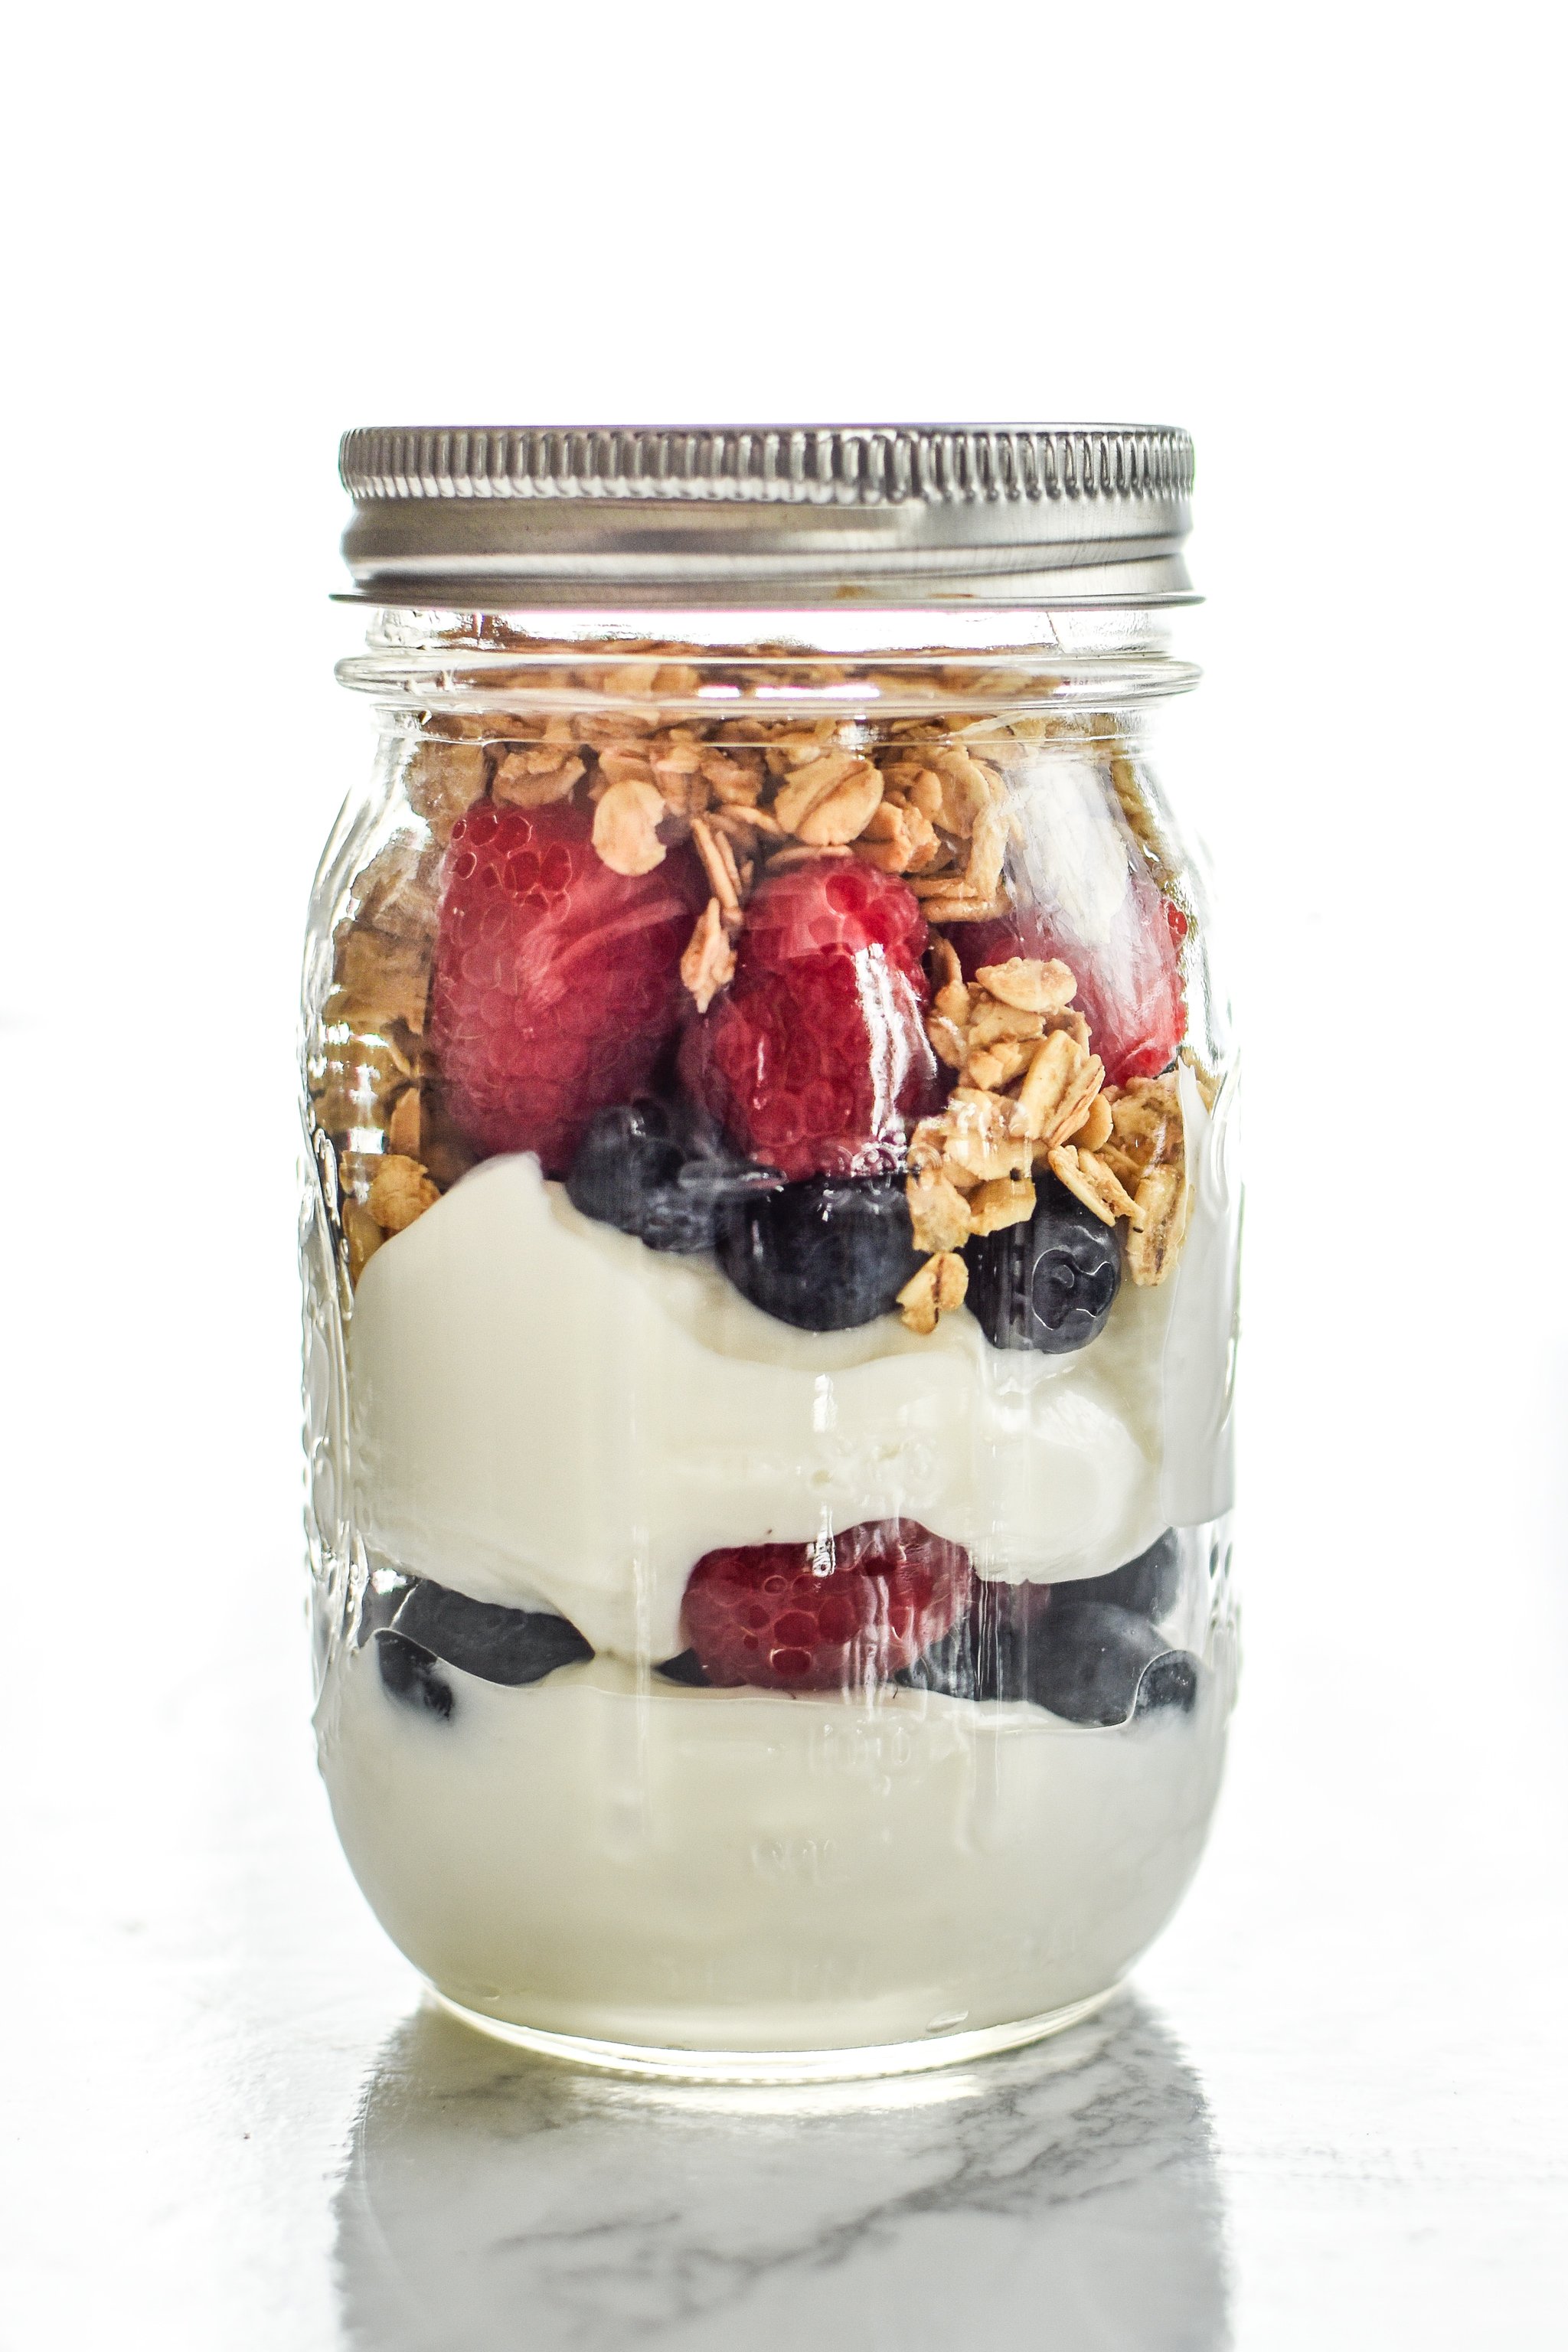 5 Make-Ahead Fruit & Greek Yogurt Parfait Ideas to Try for Breakfast